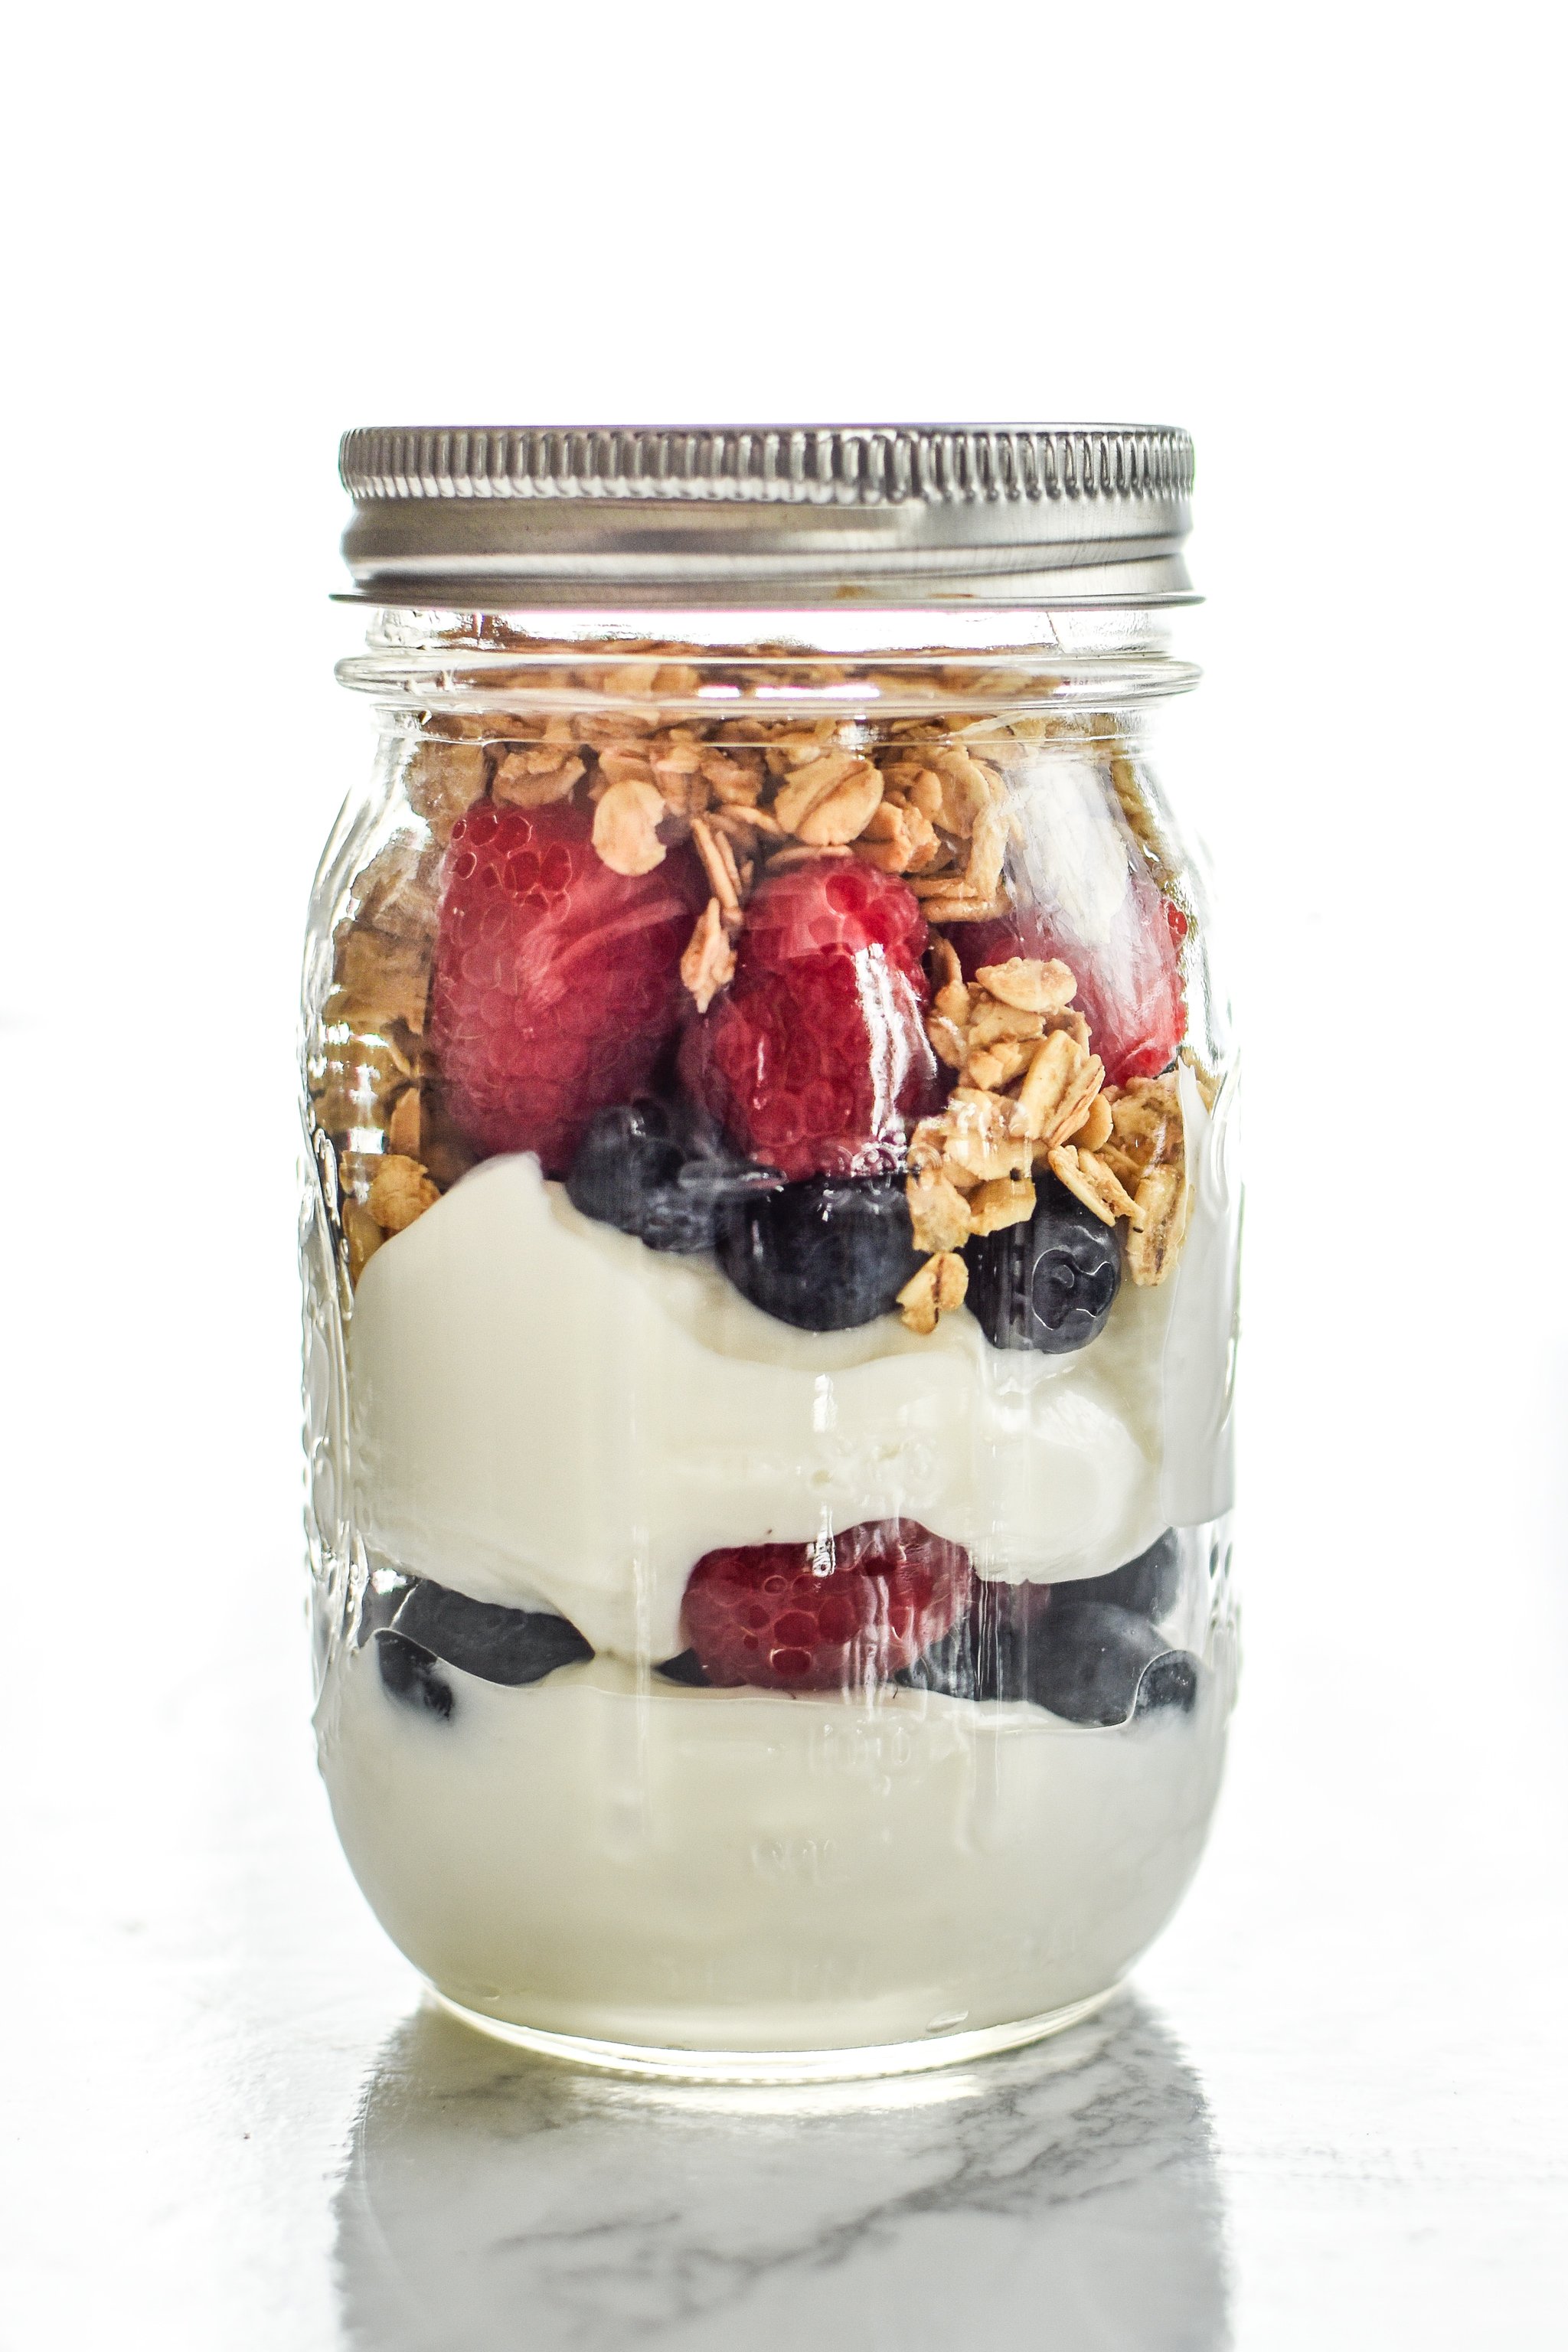 5 Make-Ahead Fruit & Greek Yogurt Parfait Ideas to Try for Breakfast